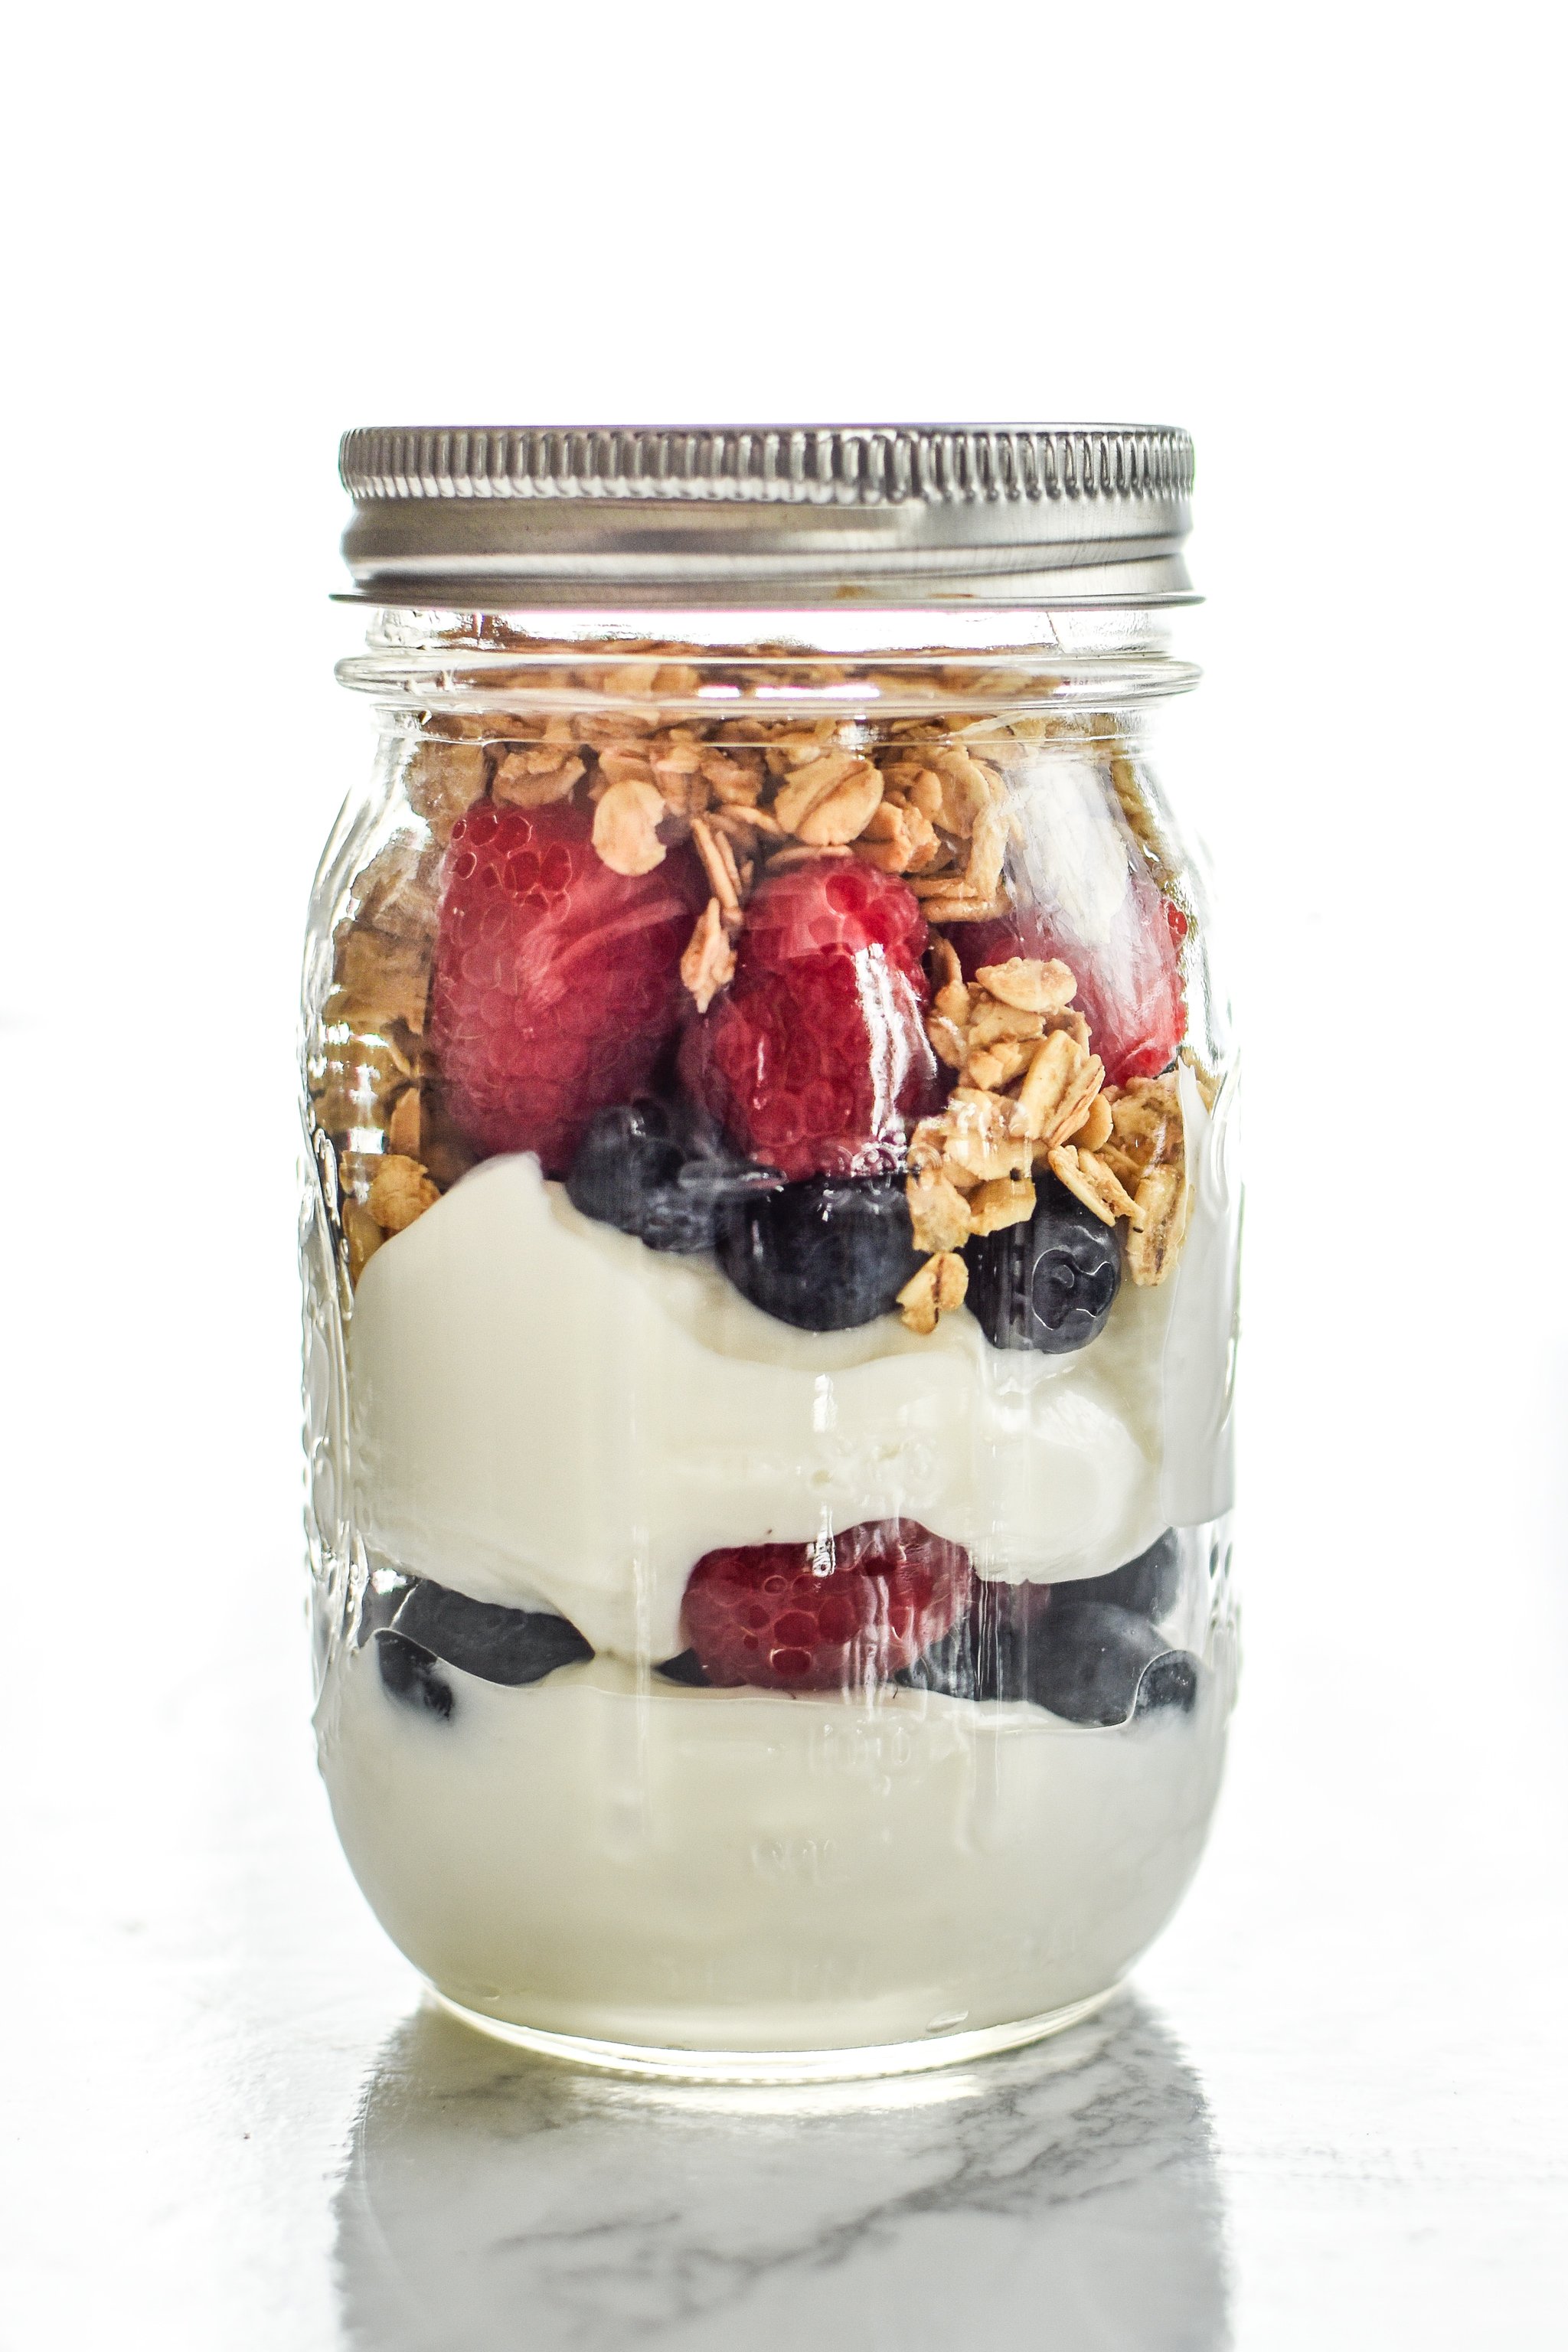 5 Make-Ahead Fruit & Greek Yogurt Parfait Ideas to Try for Breakfast